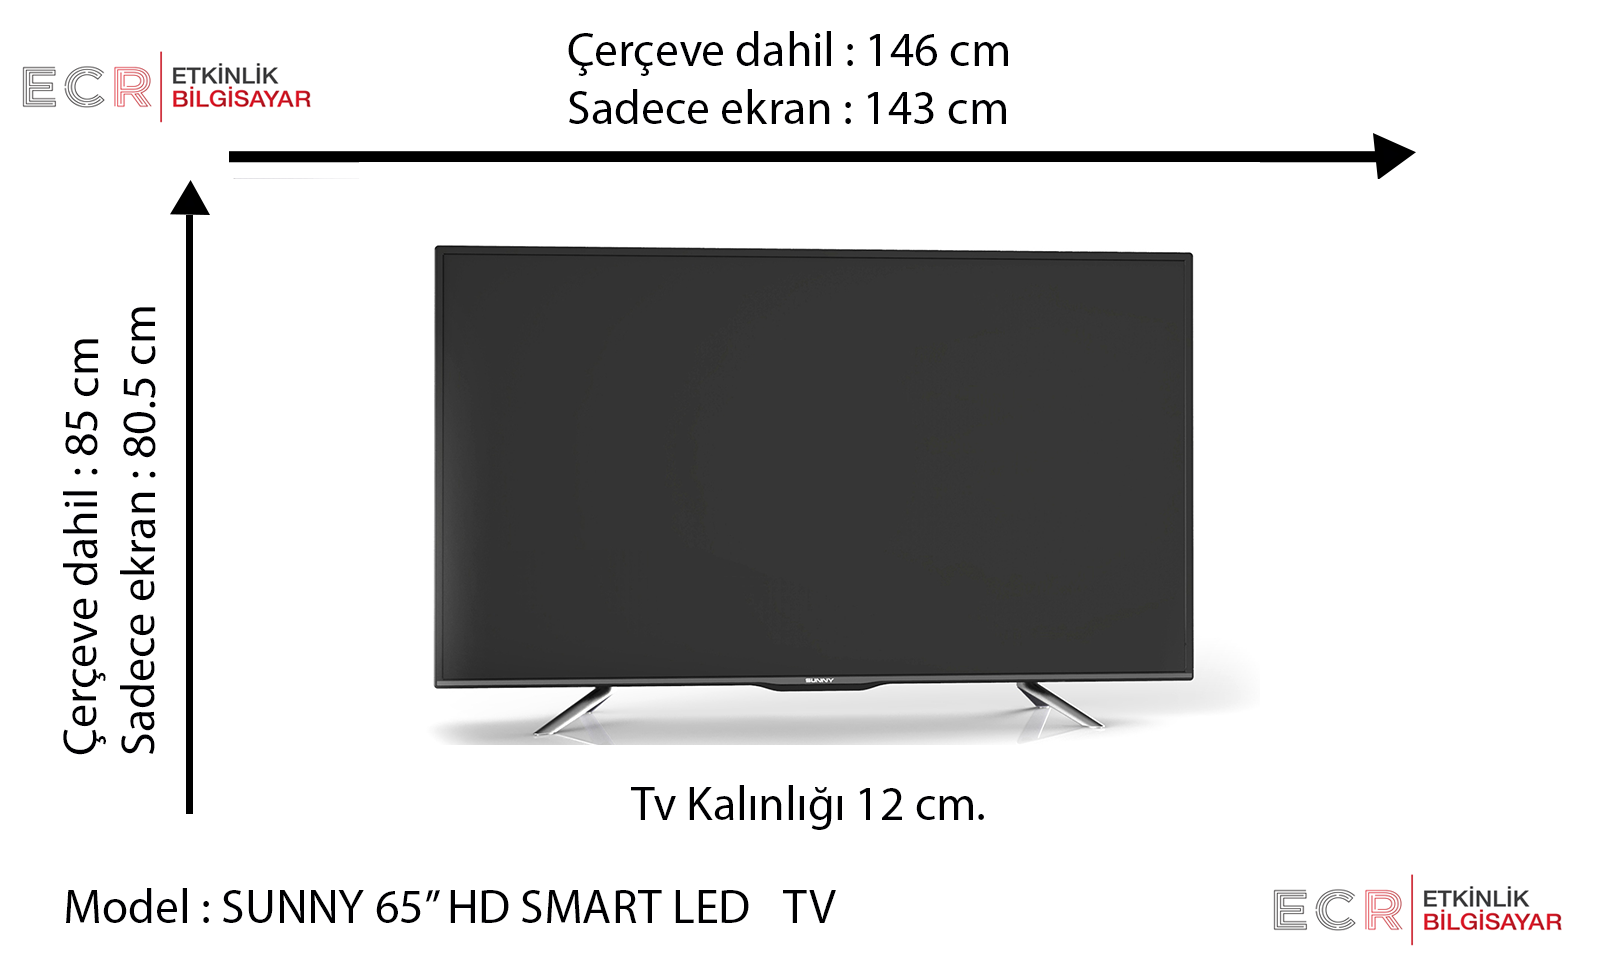 75 дюймов сколько ширина телевизора. Размер телевизора самсунг 50 дюймов. Телевизор самсунг 75 дюймов габариты высота ширина. Телевизор 65 дюймов Размеры.